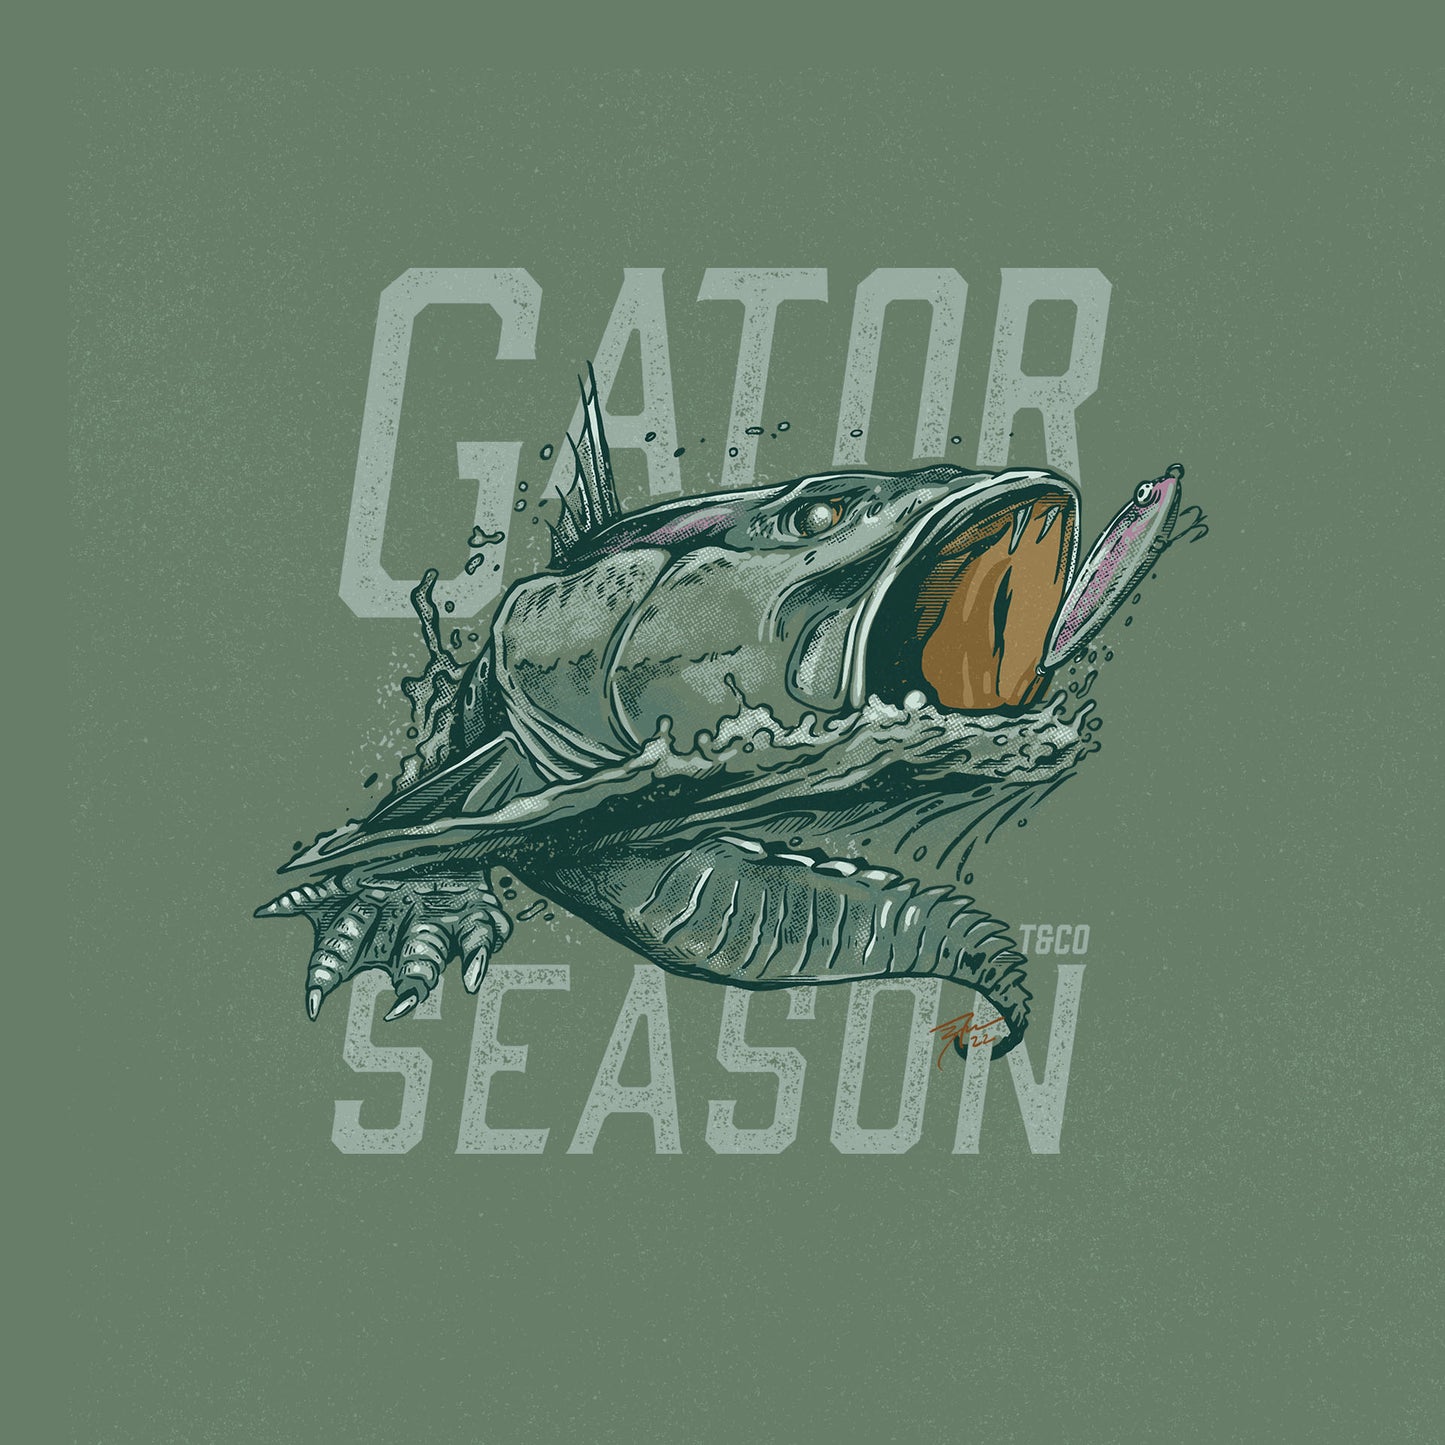 WHOLESALE PREVIEW - Gator Season